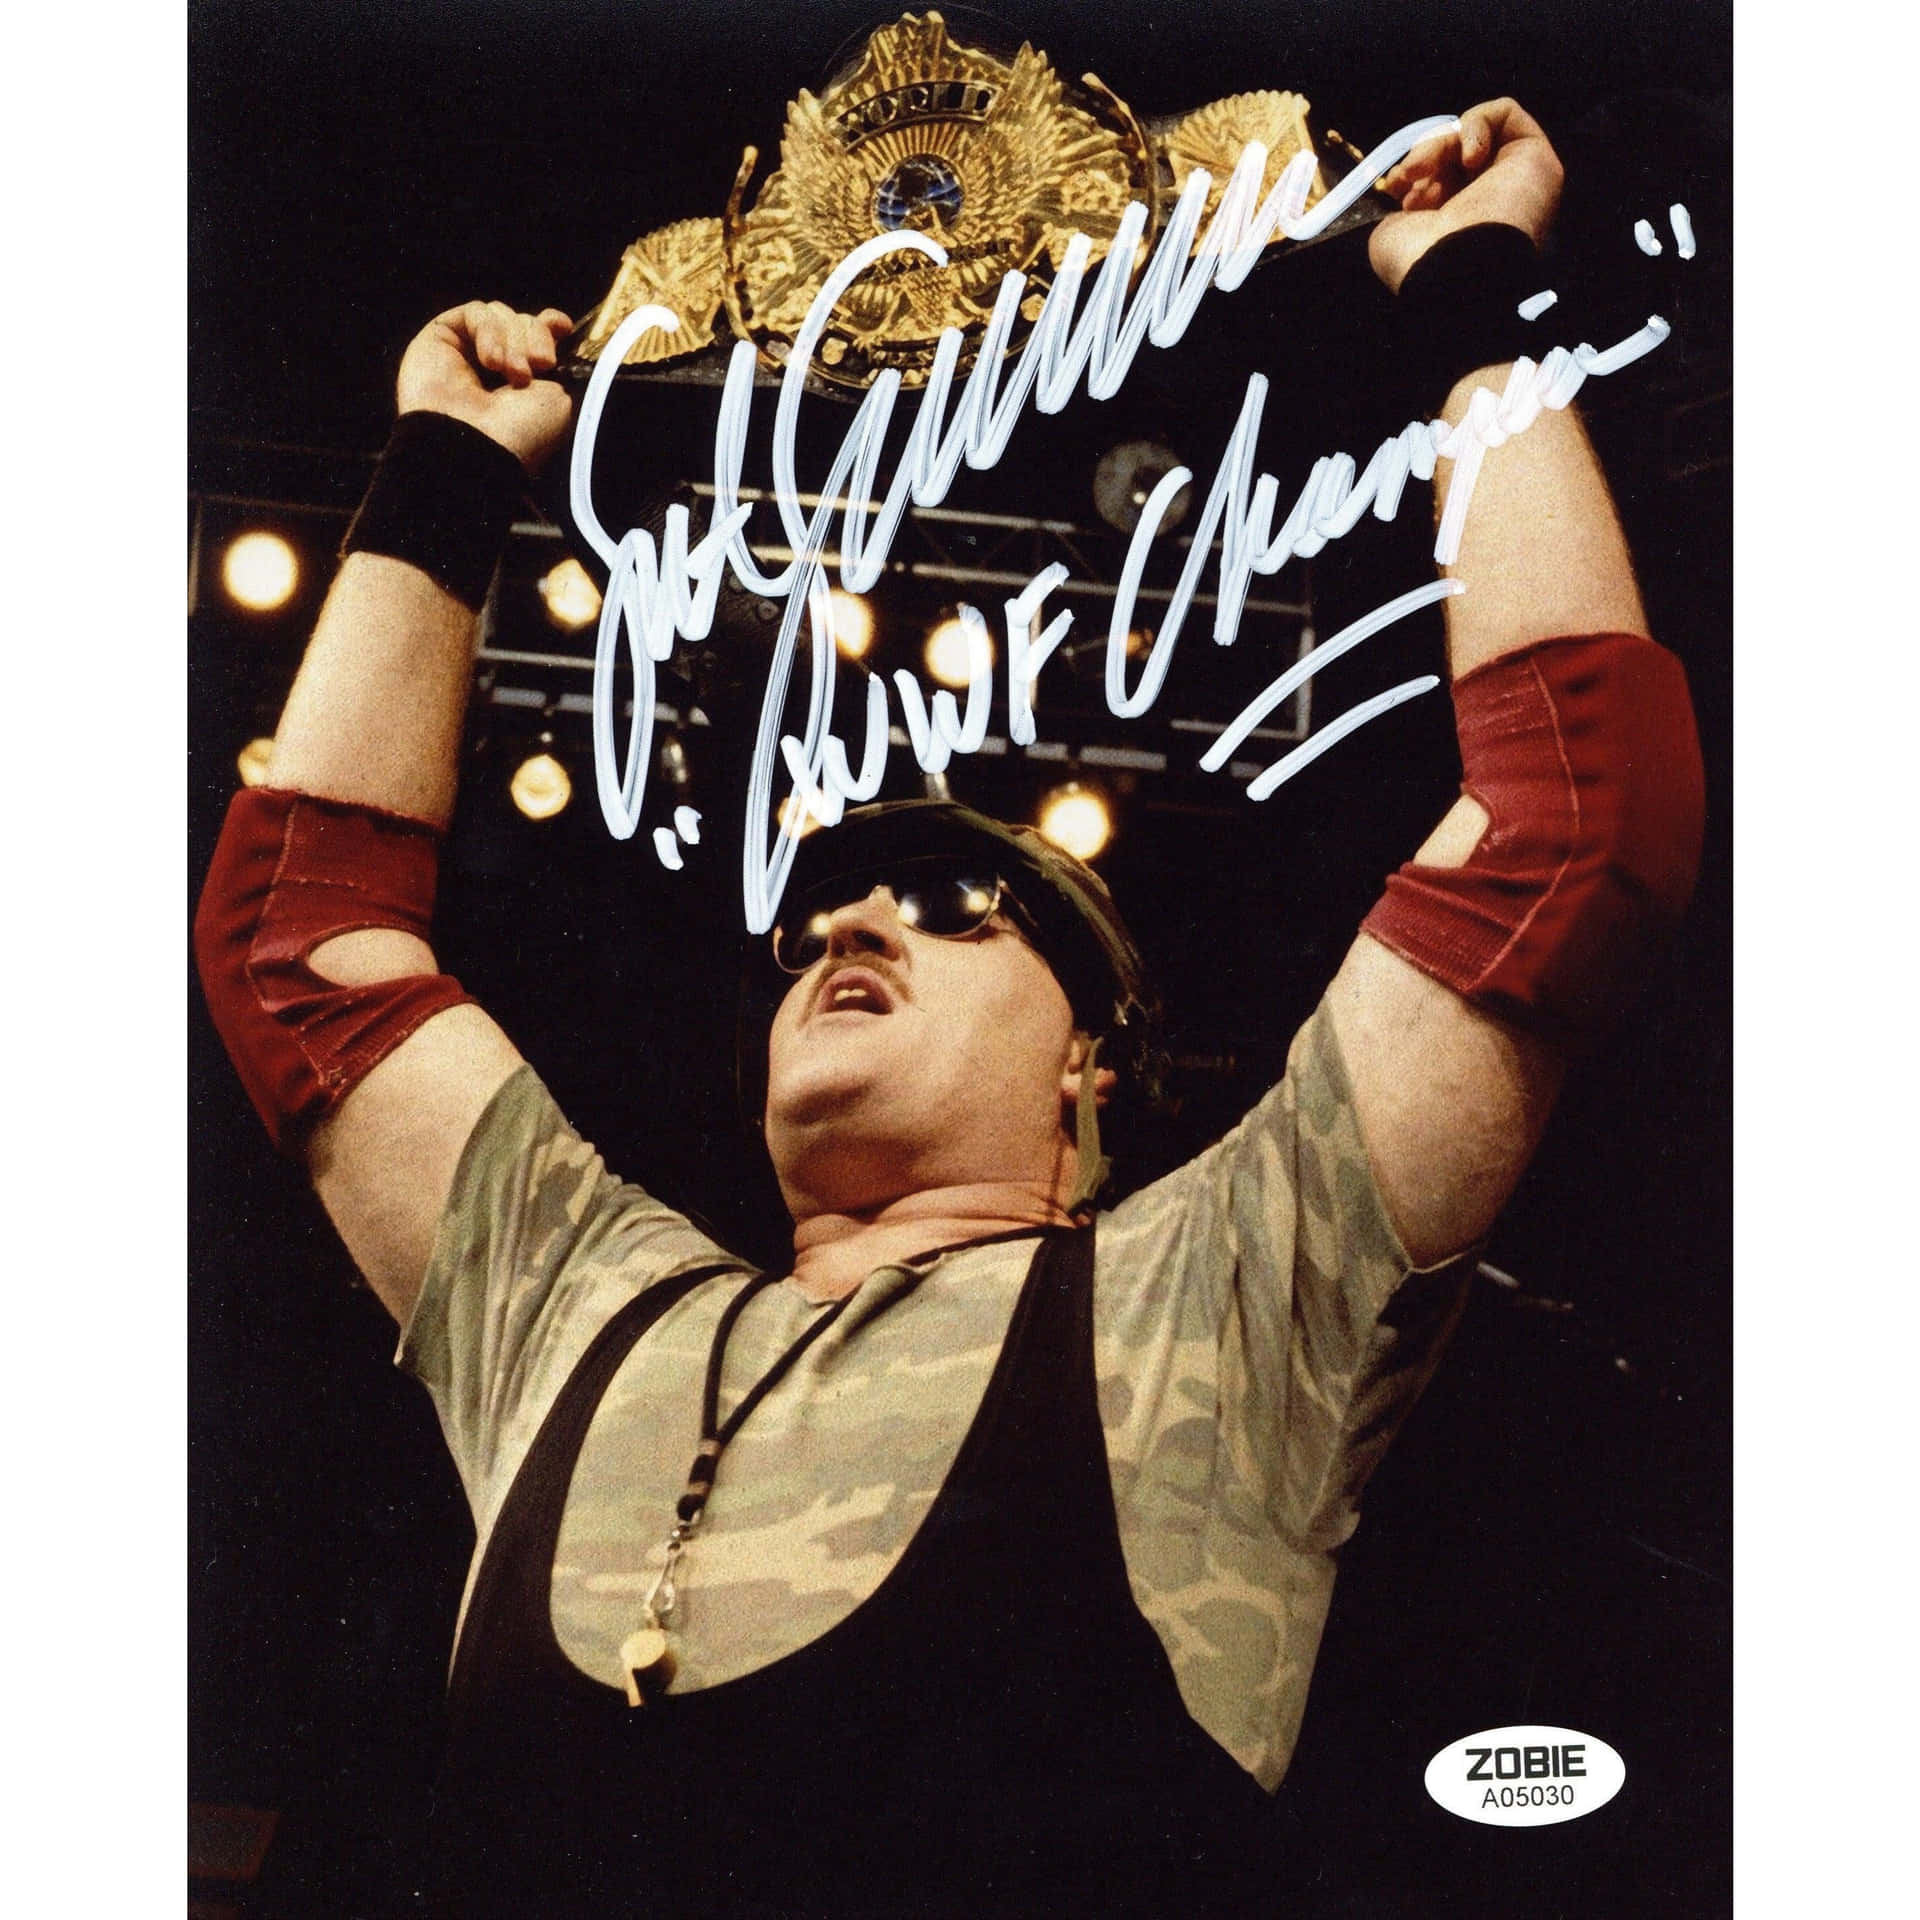 Sgt Slaughter Signed Wwf Wrestling Poster Background